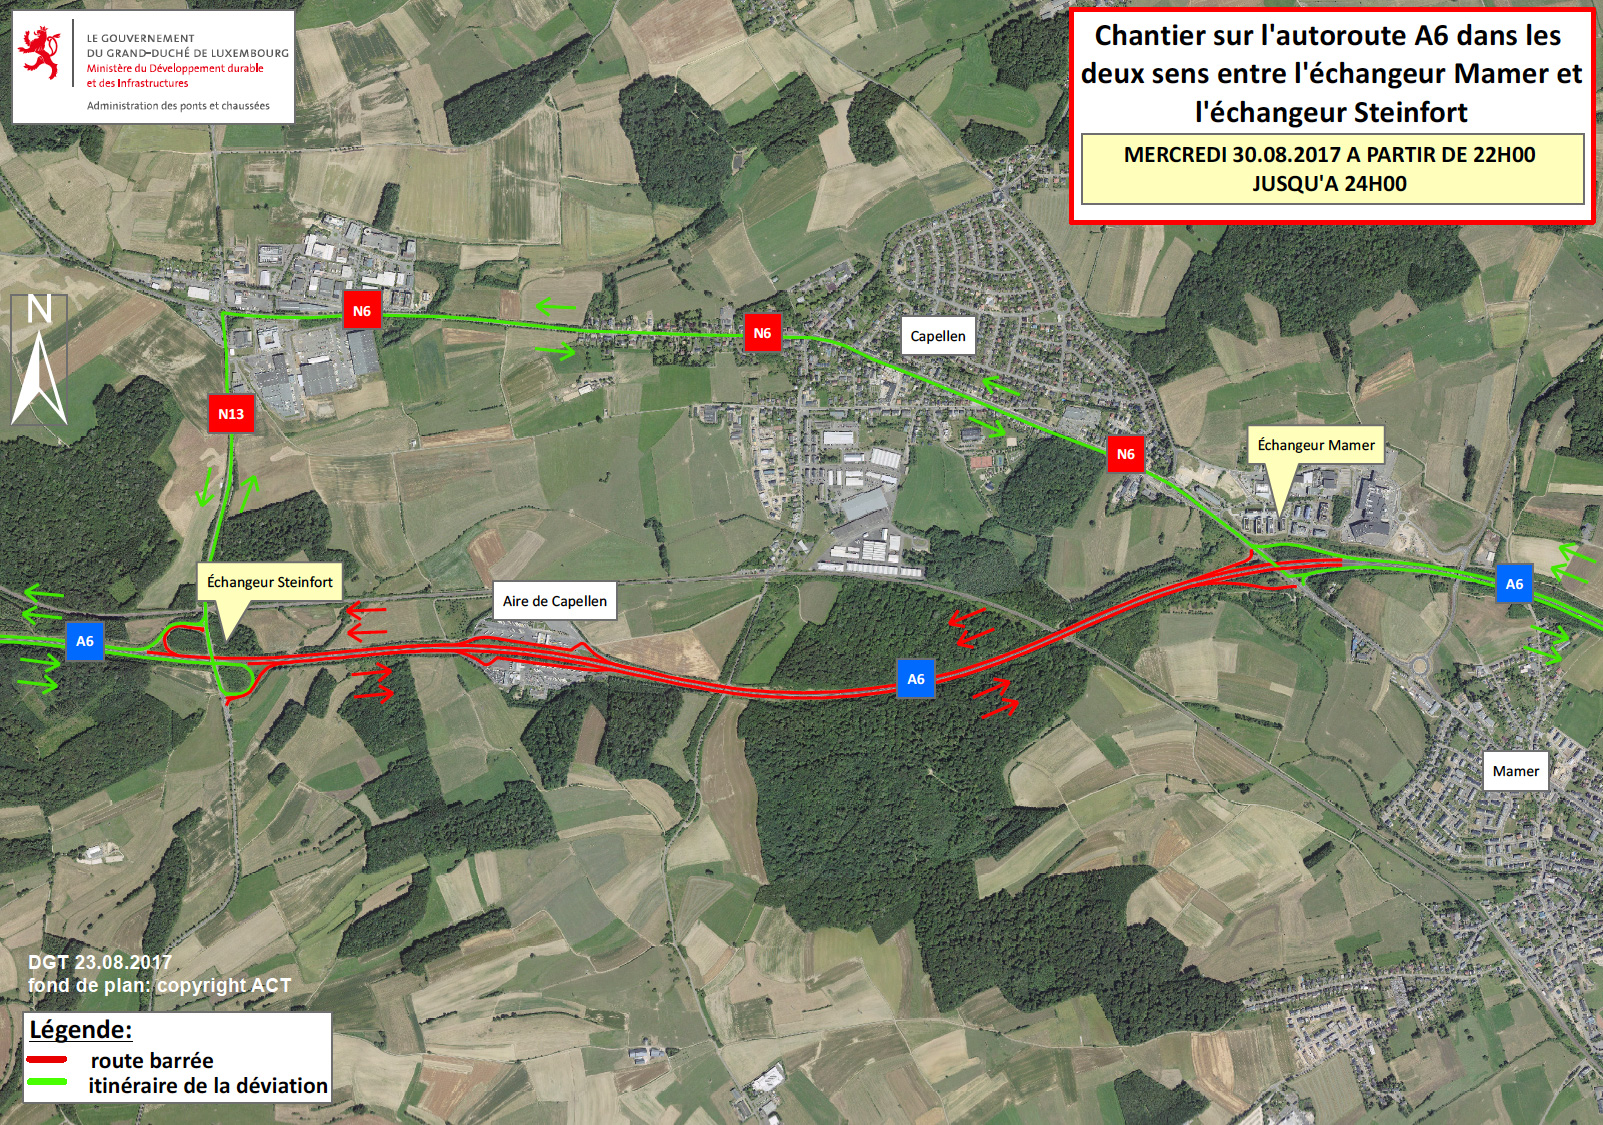 Plan de déviation du chantier sur l'A6 entre Mamer et Steinfort